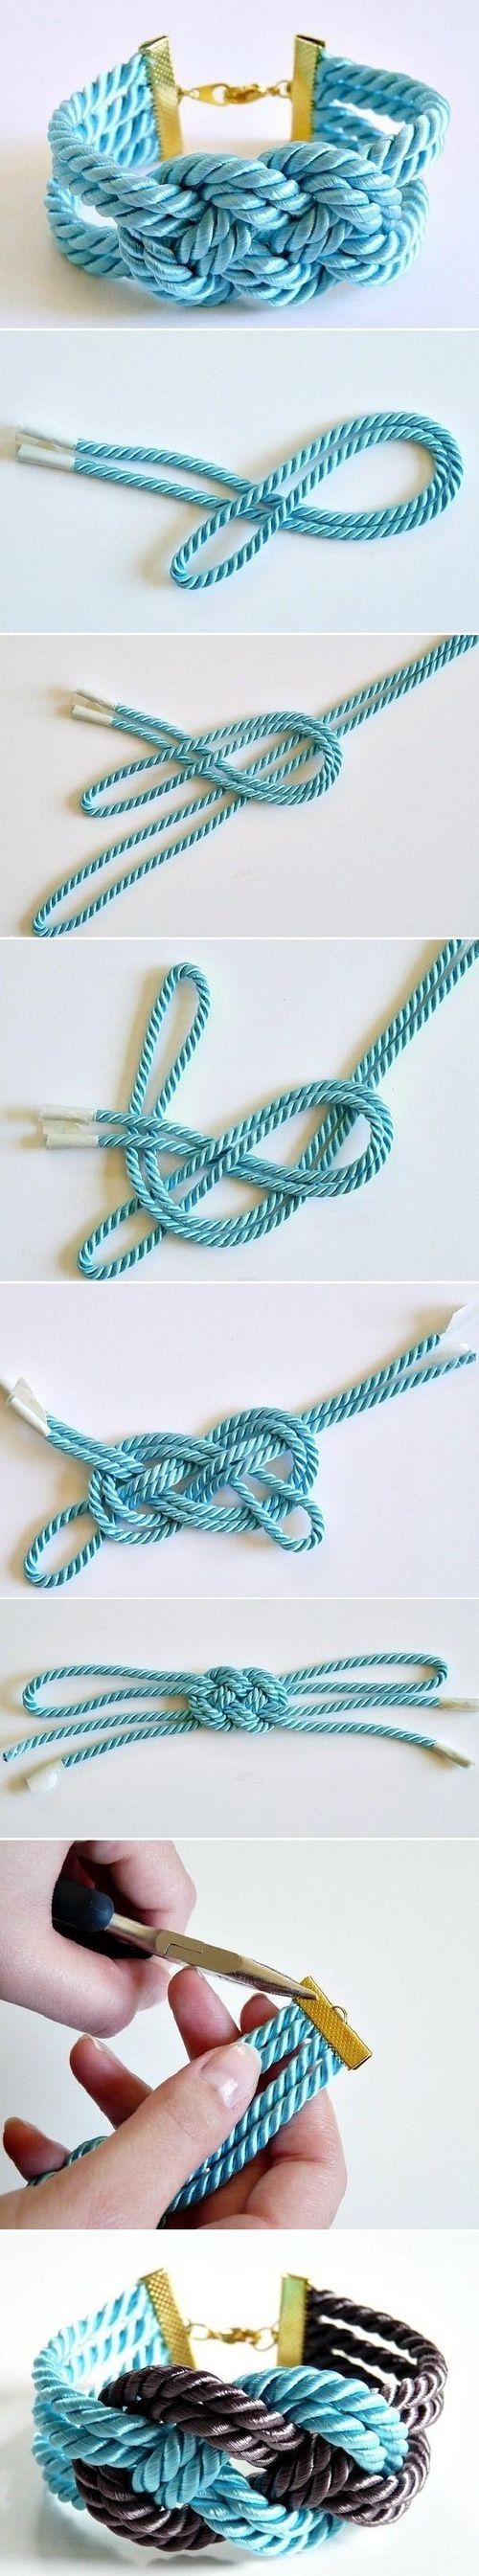 Rope Bracelets